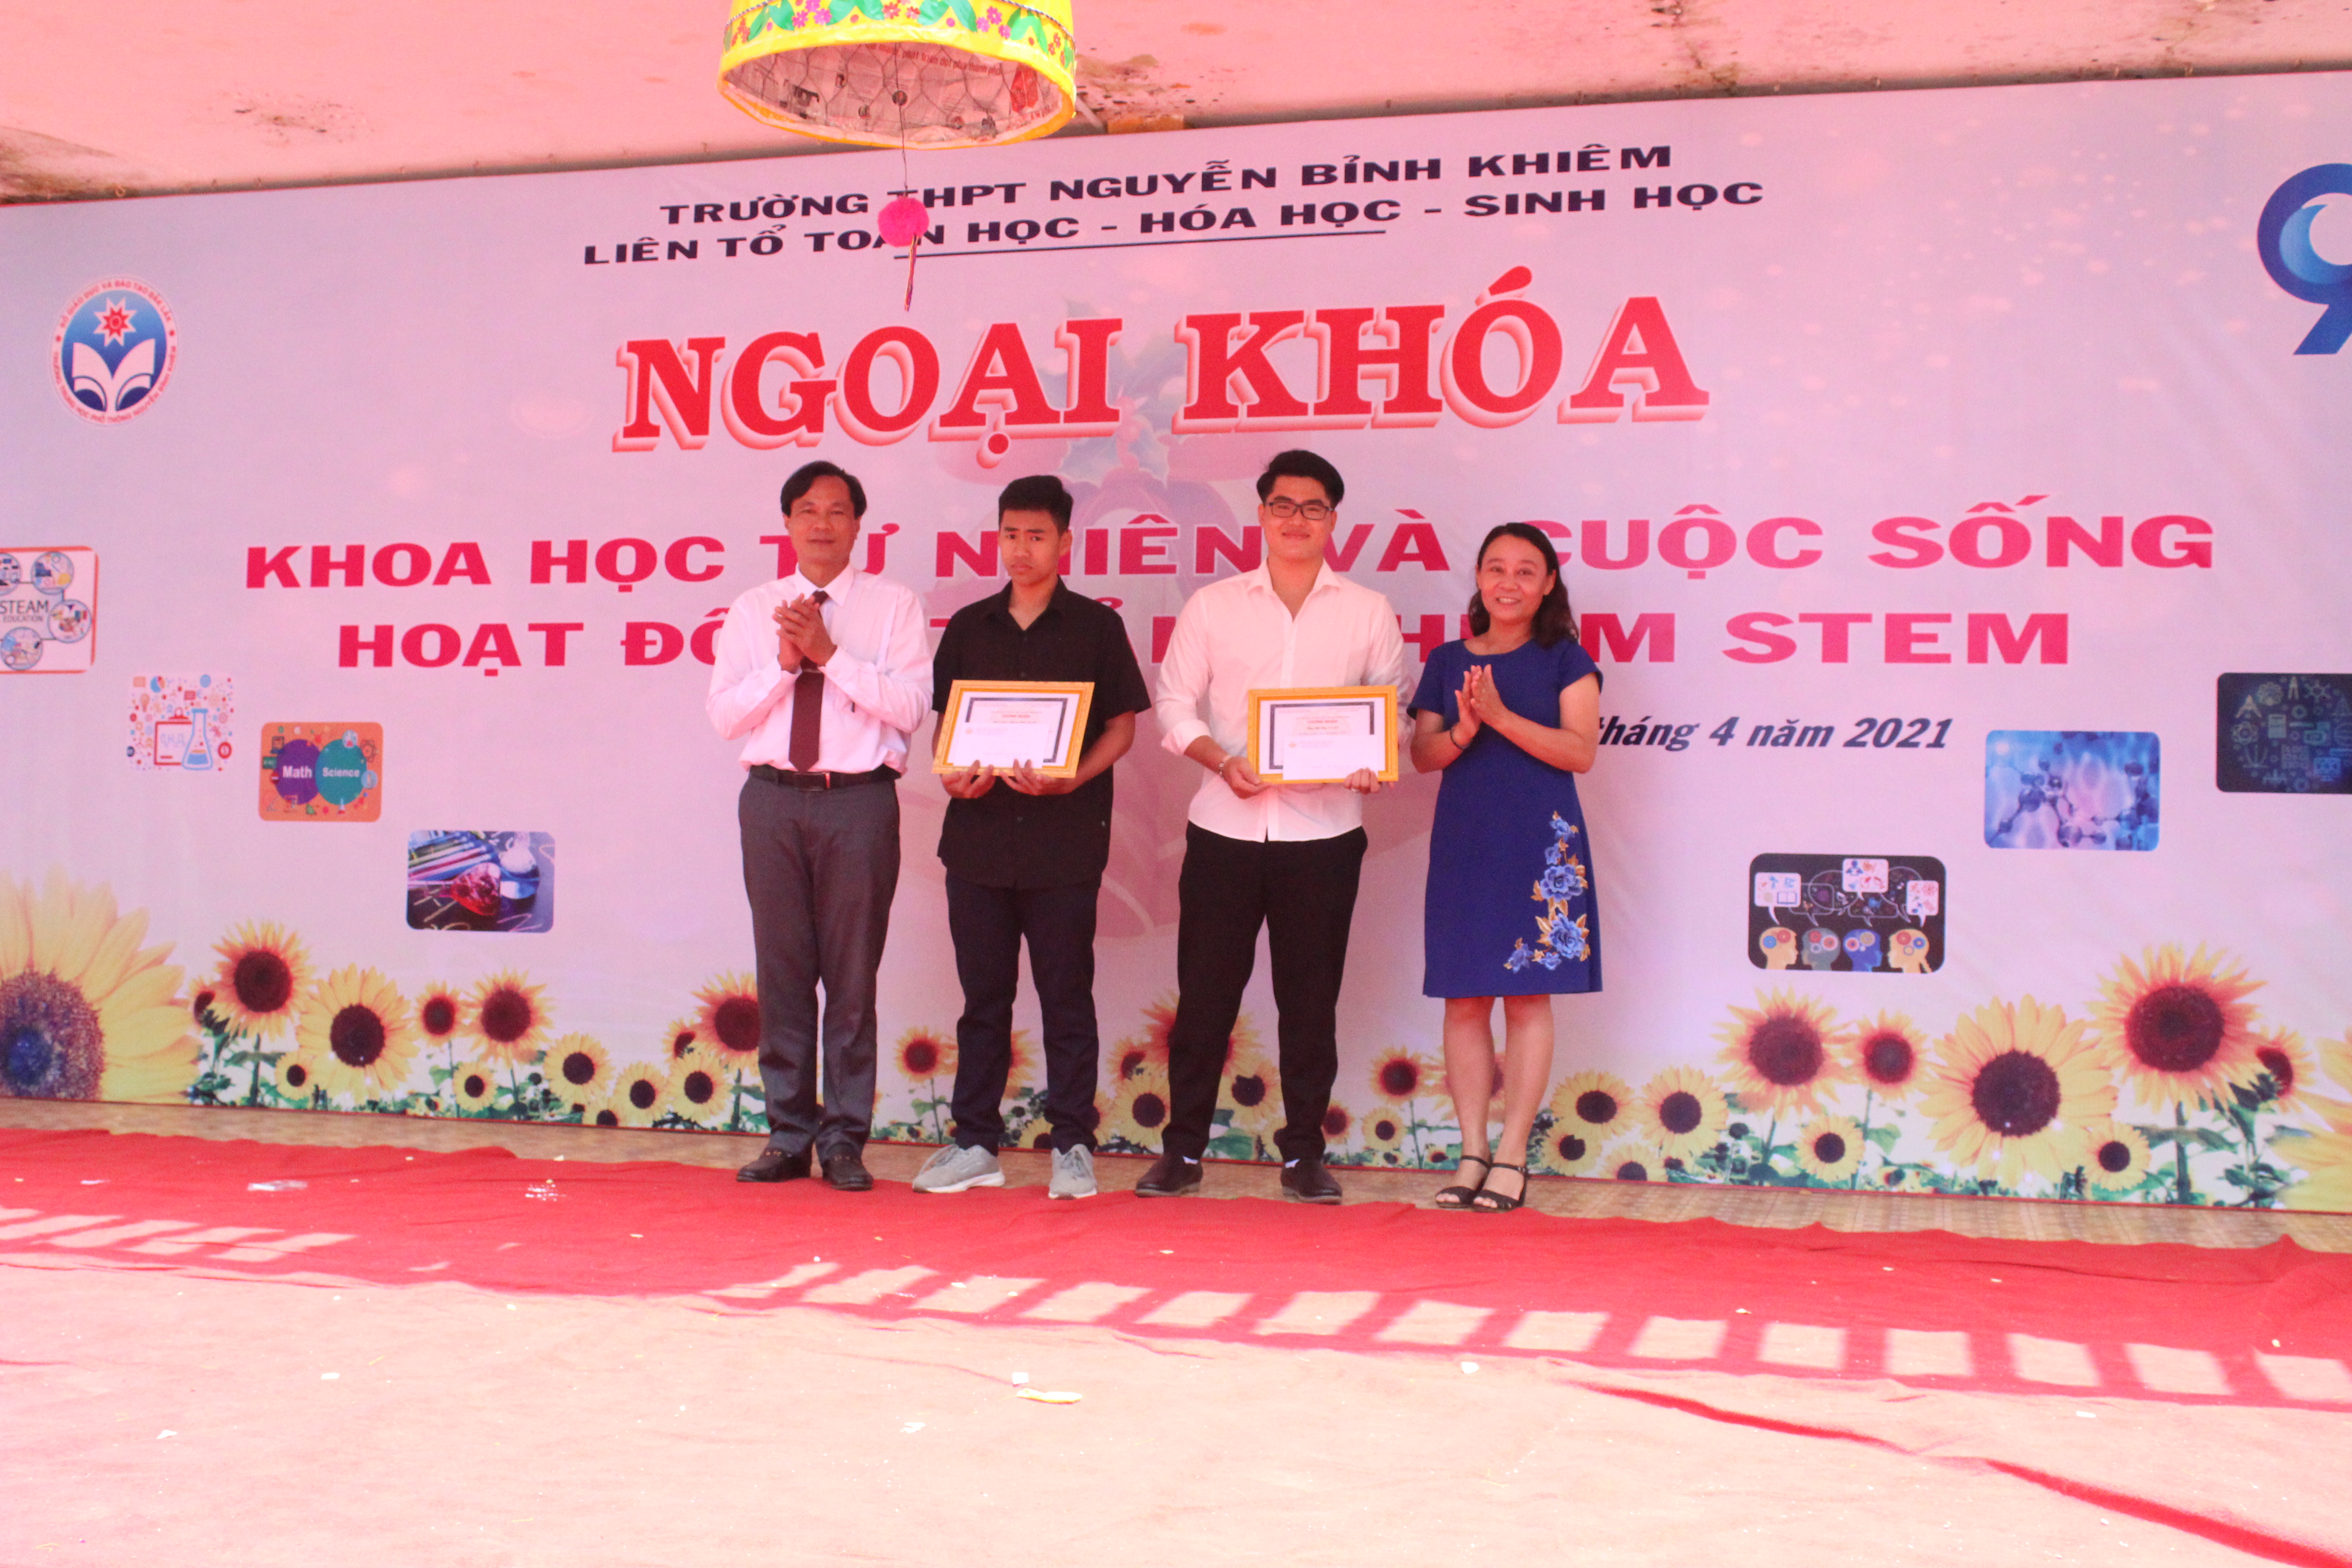 Cô giáo Nguyễn Thị Mai Phương, Phó Hiệu trưởng và Thầy giáo Lê Văn Tiến, Tổ trưởng tổ Toán trao thưởng cho đại diện nhóm thực hiện STEM